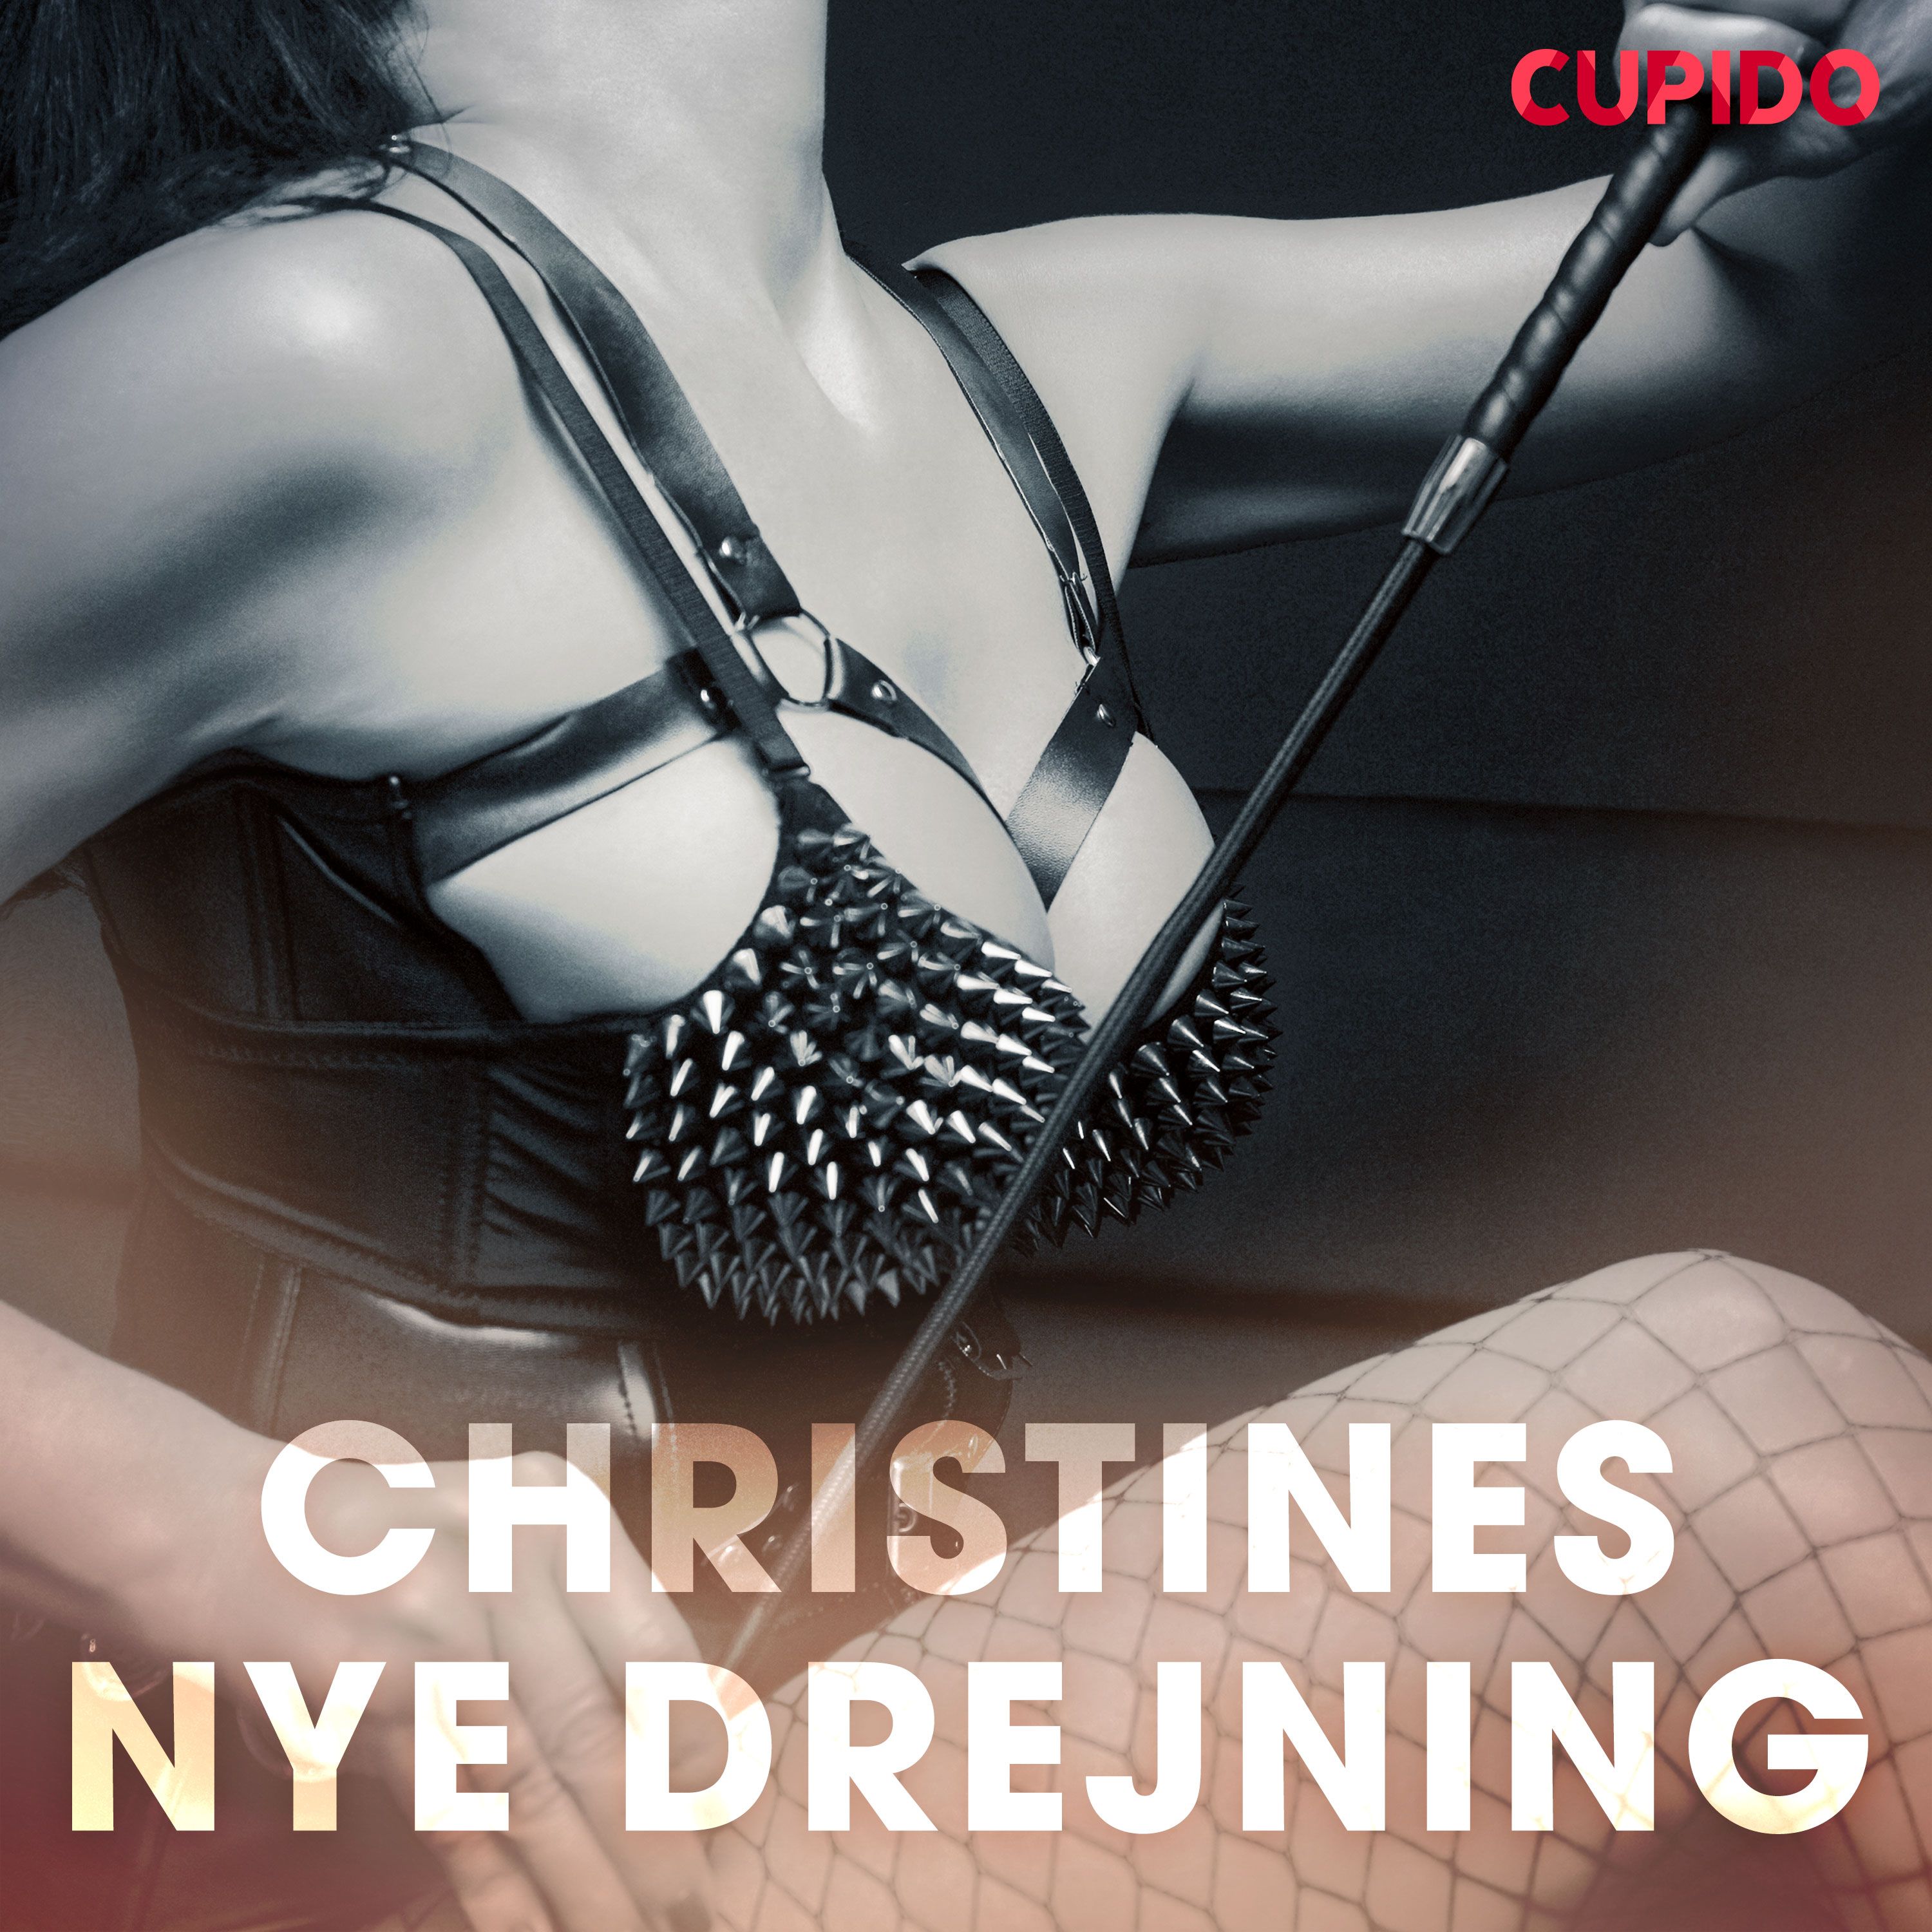 Christines nye drejning, ljudbok av Cupido